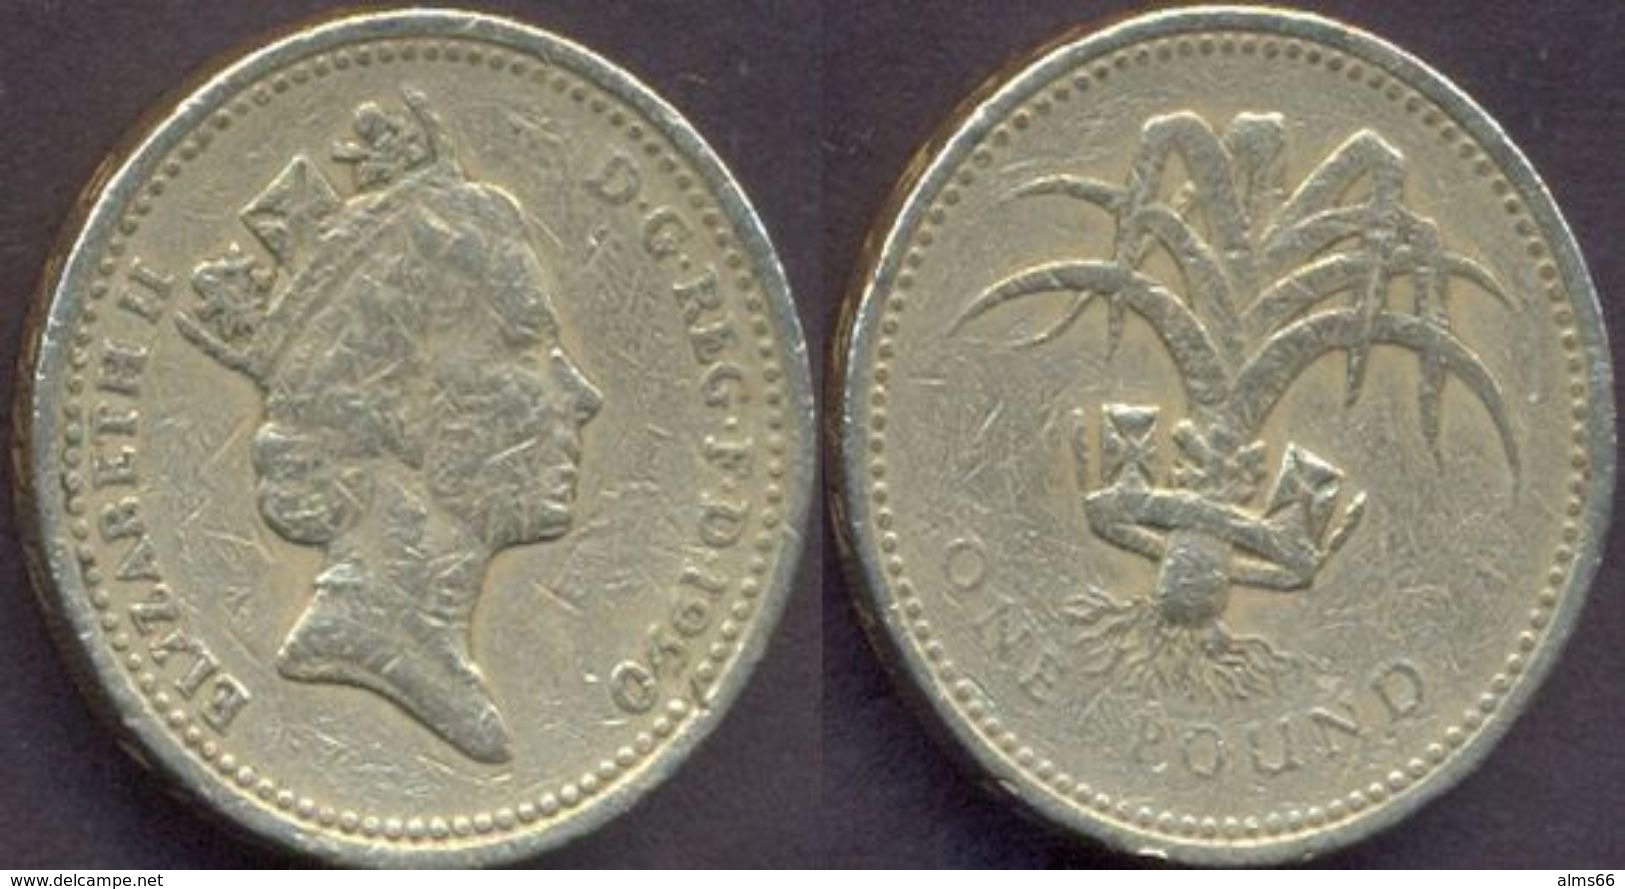 Great Britain UK 1 Pound 1990  AVF - 1 Pound